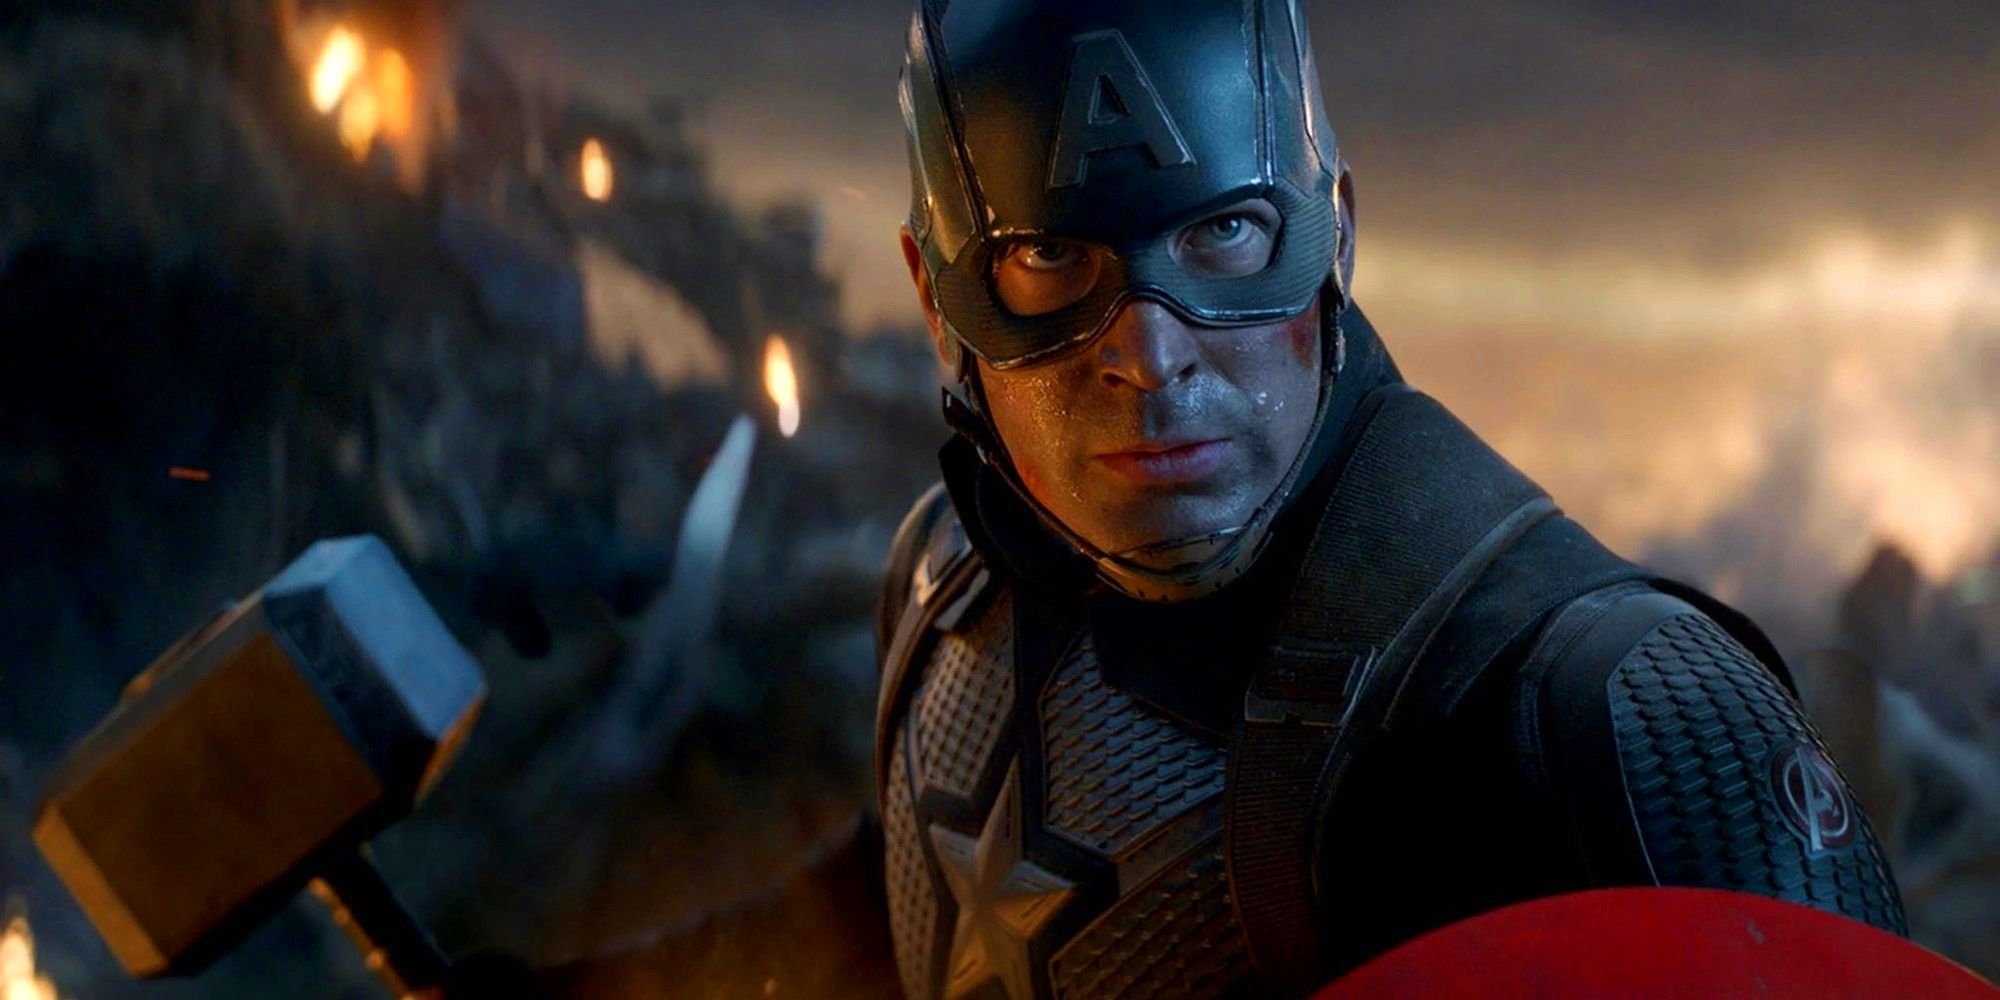 Captain America with Mjolnir in Avengers Endgame